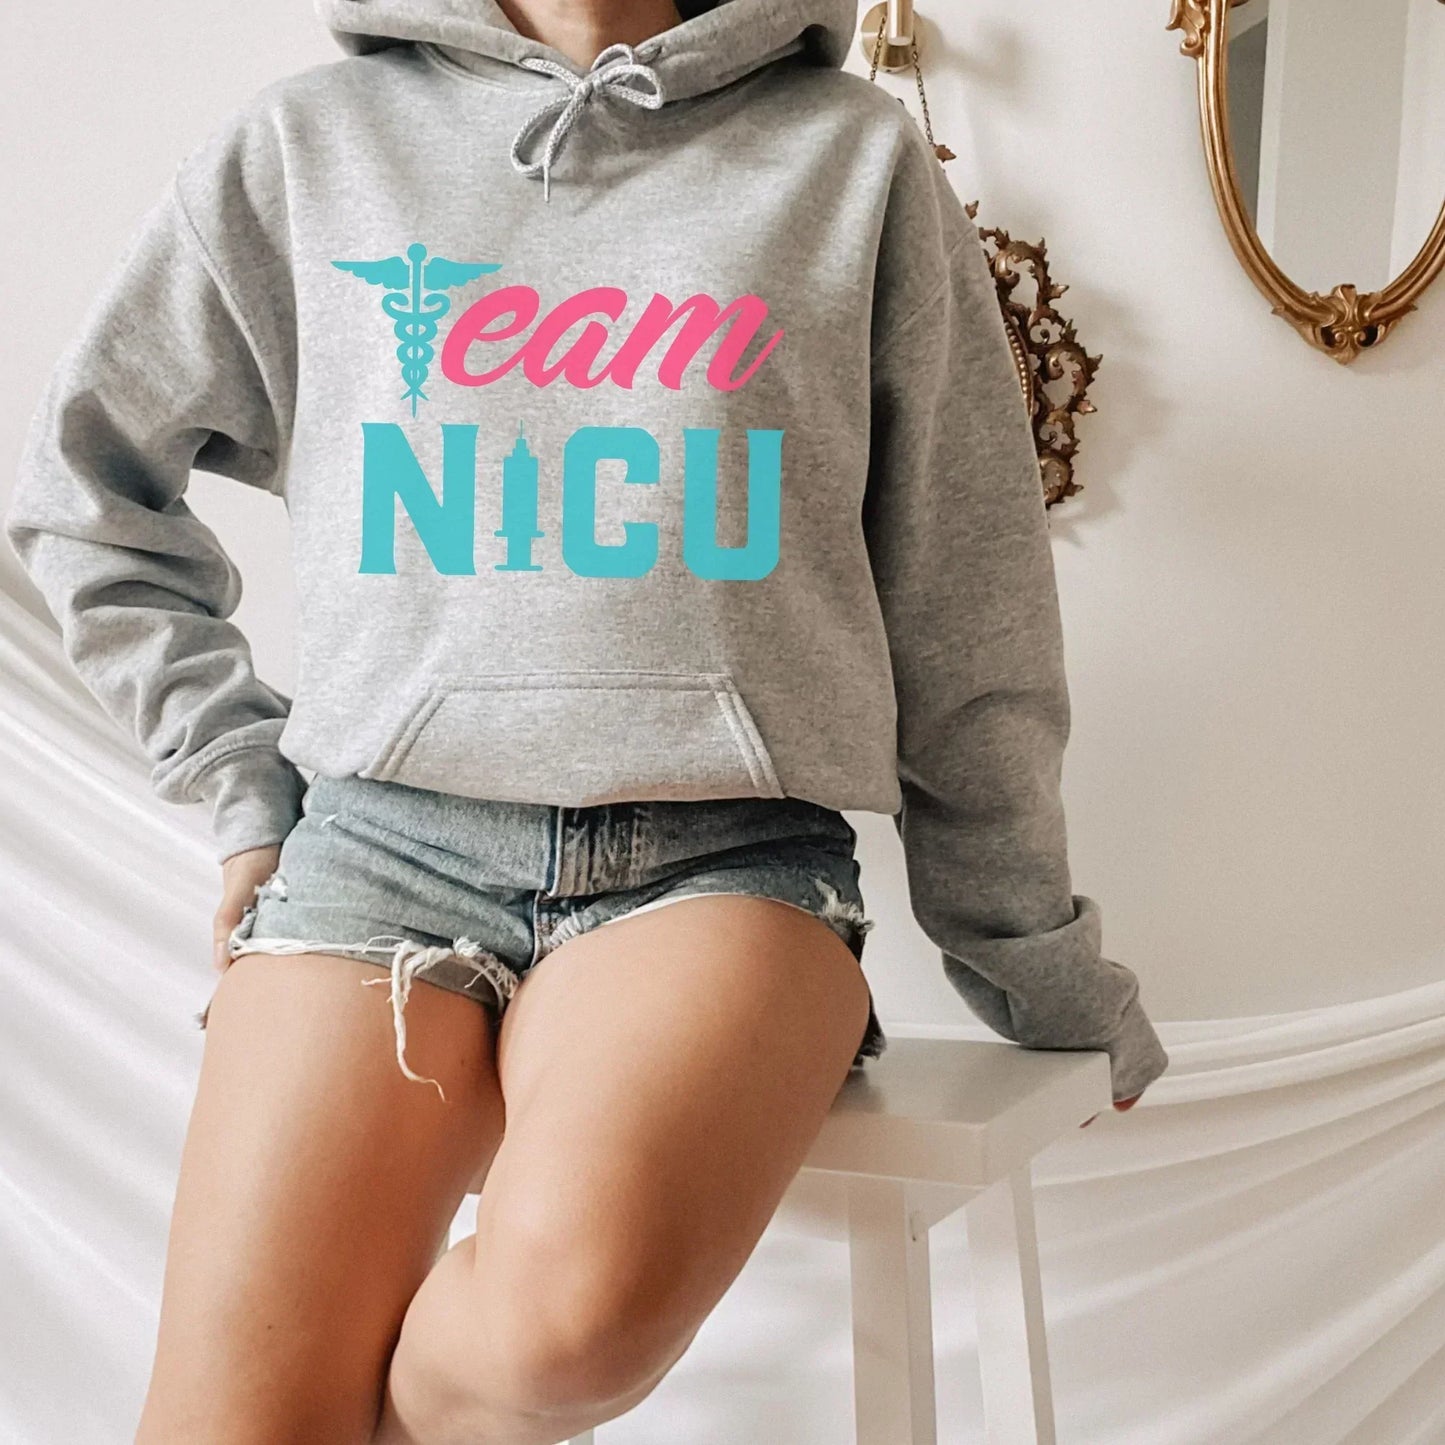 Team NICU Nurse Shirt, Nurse Gift